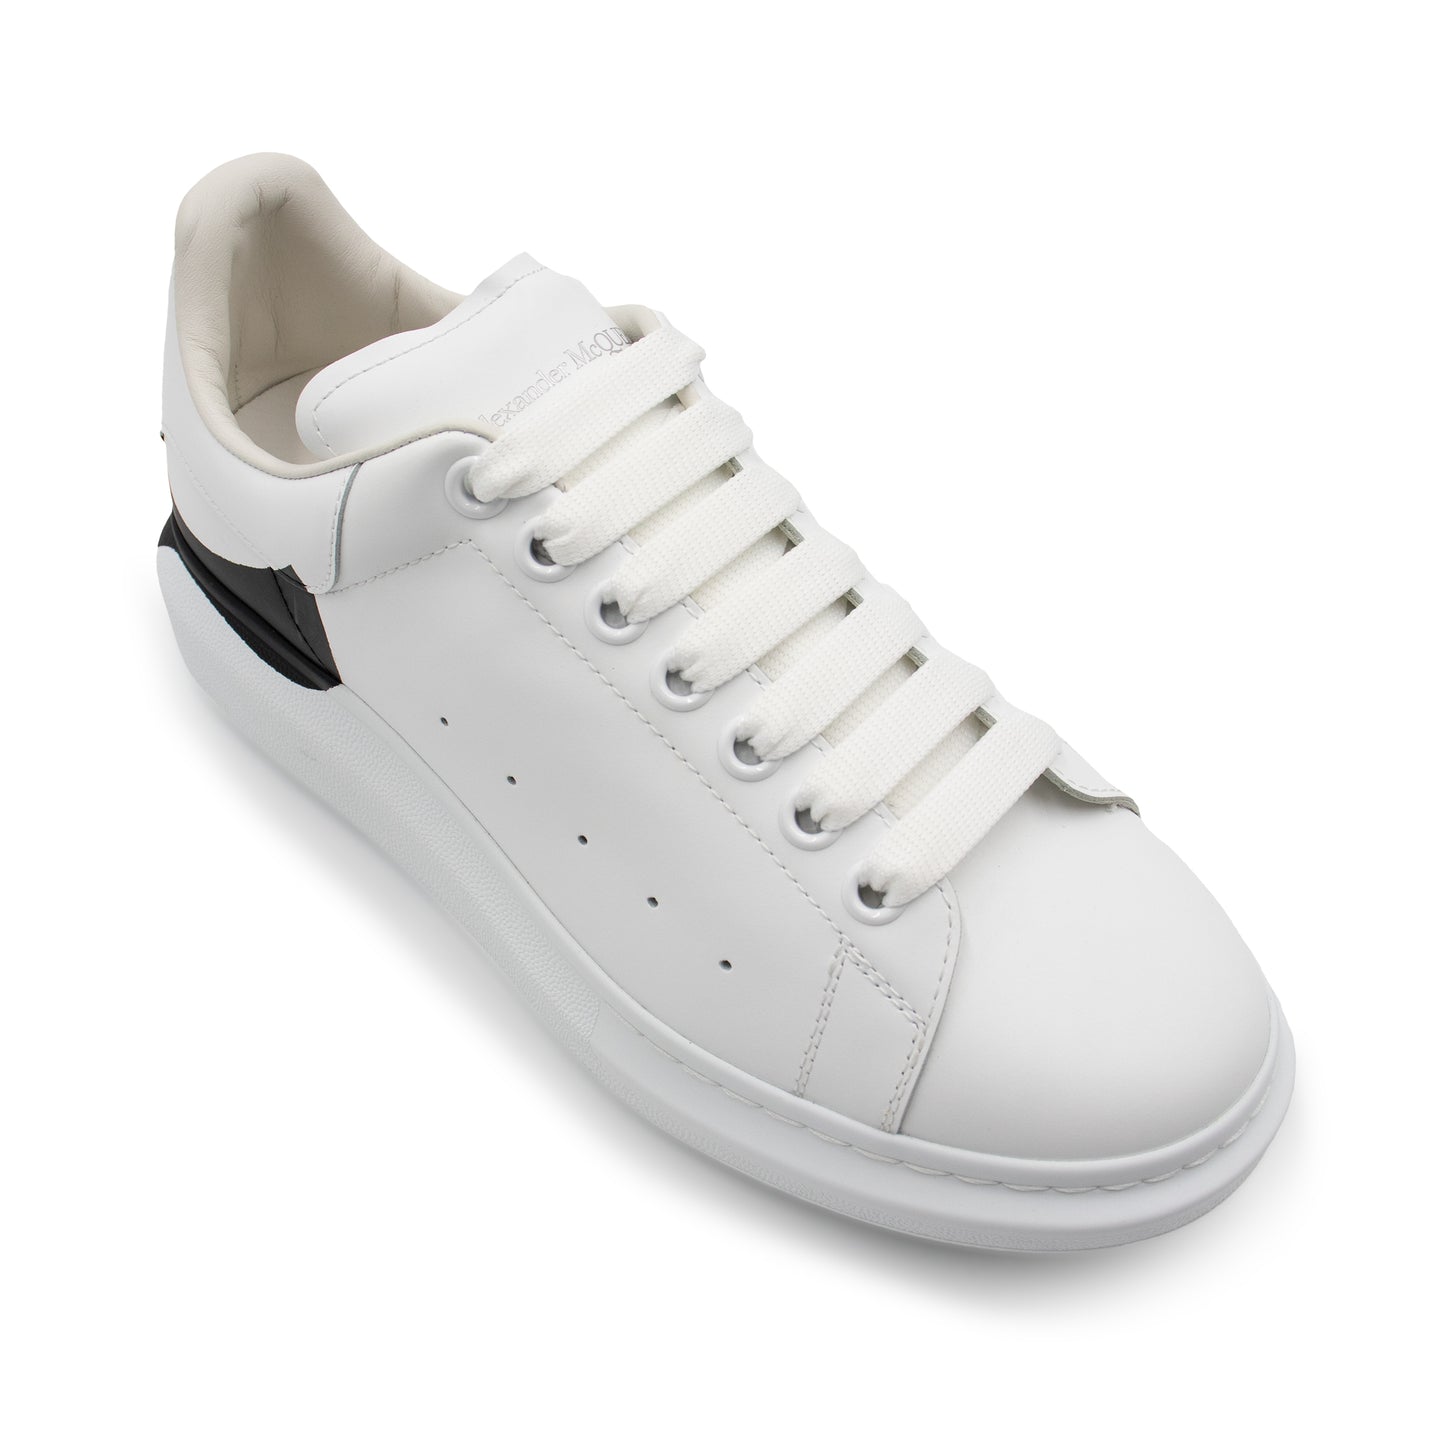 Larry Printed Drop Heel Sneaker in White/Black